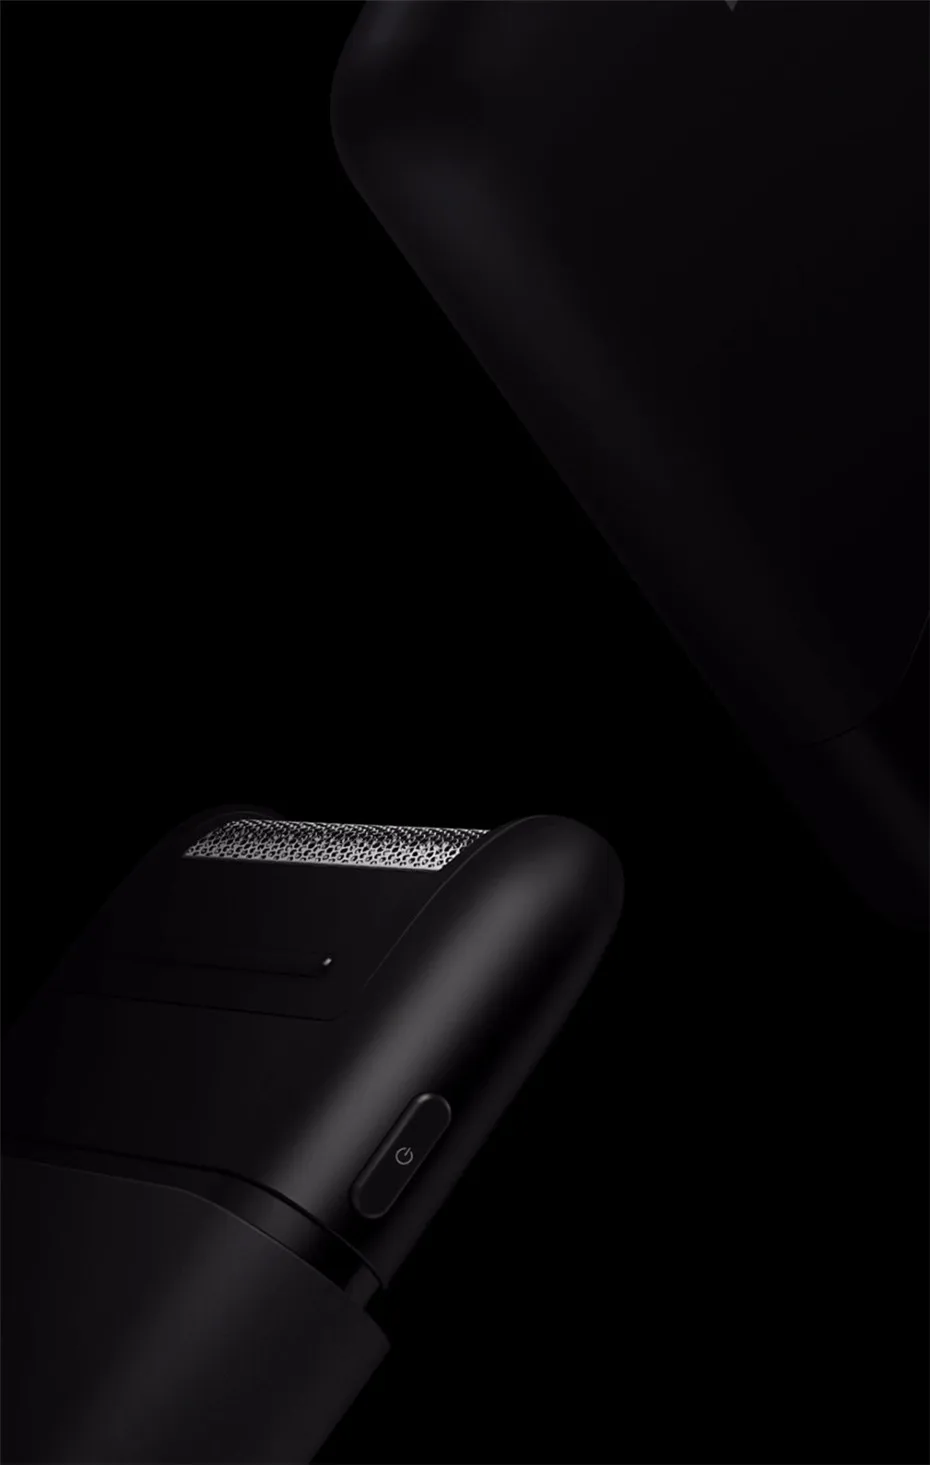 Xiaomi Mijia мини портативный Электрический бритва полностью металлический корпус Япония Бит 30 дней использования один раз зарядки Mijia бритья